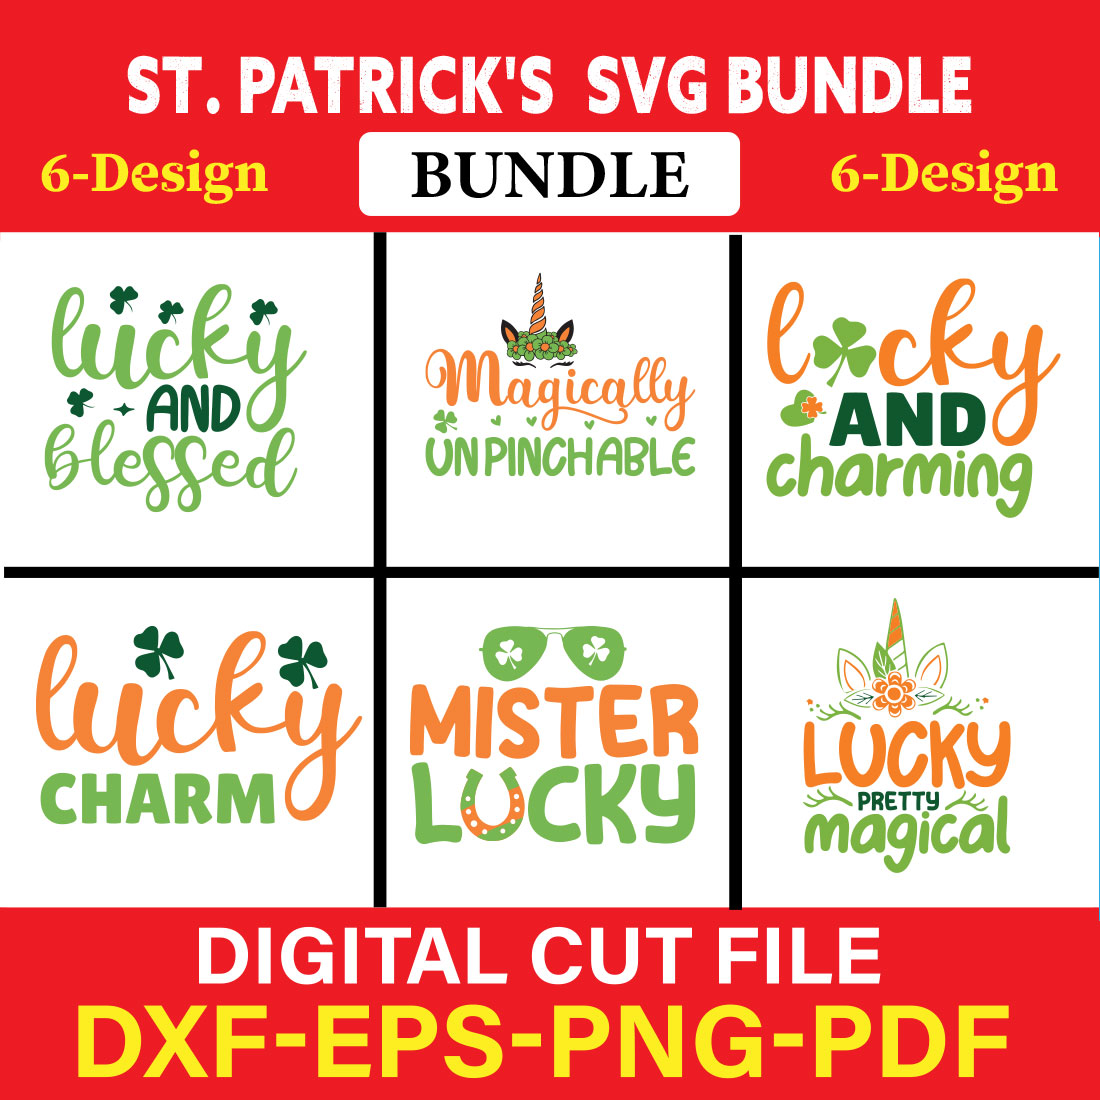 St Patrick's T-shirt Design Bundle Vol-3 cover image.